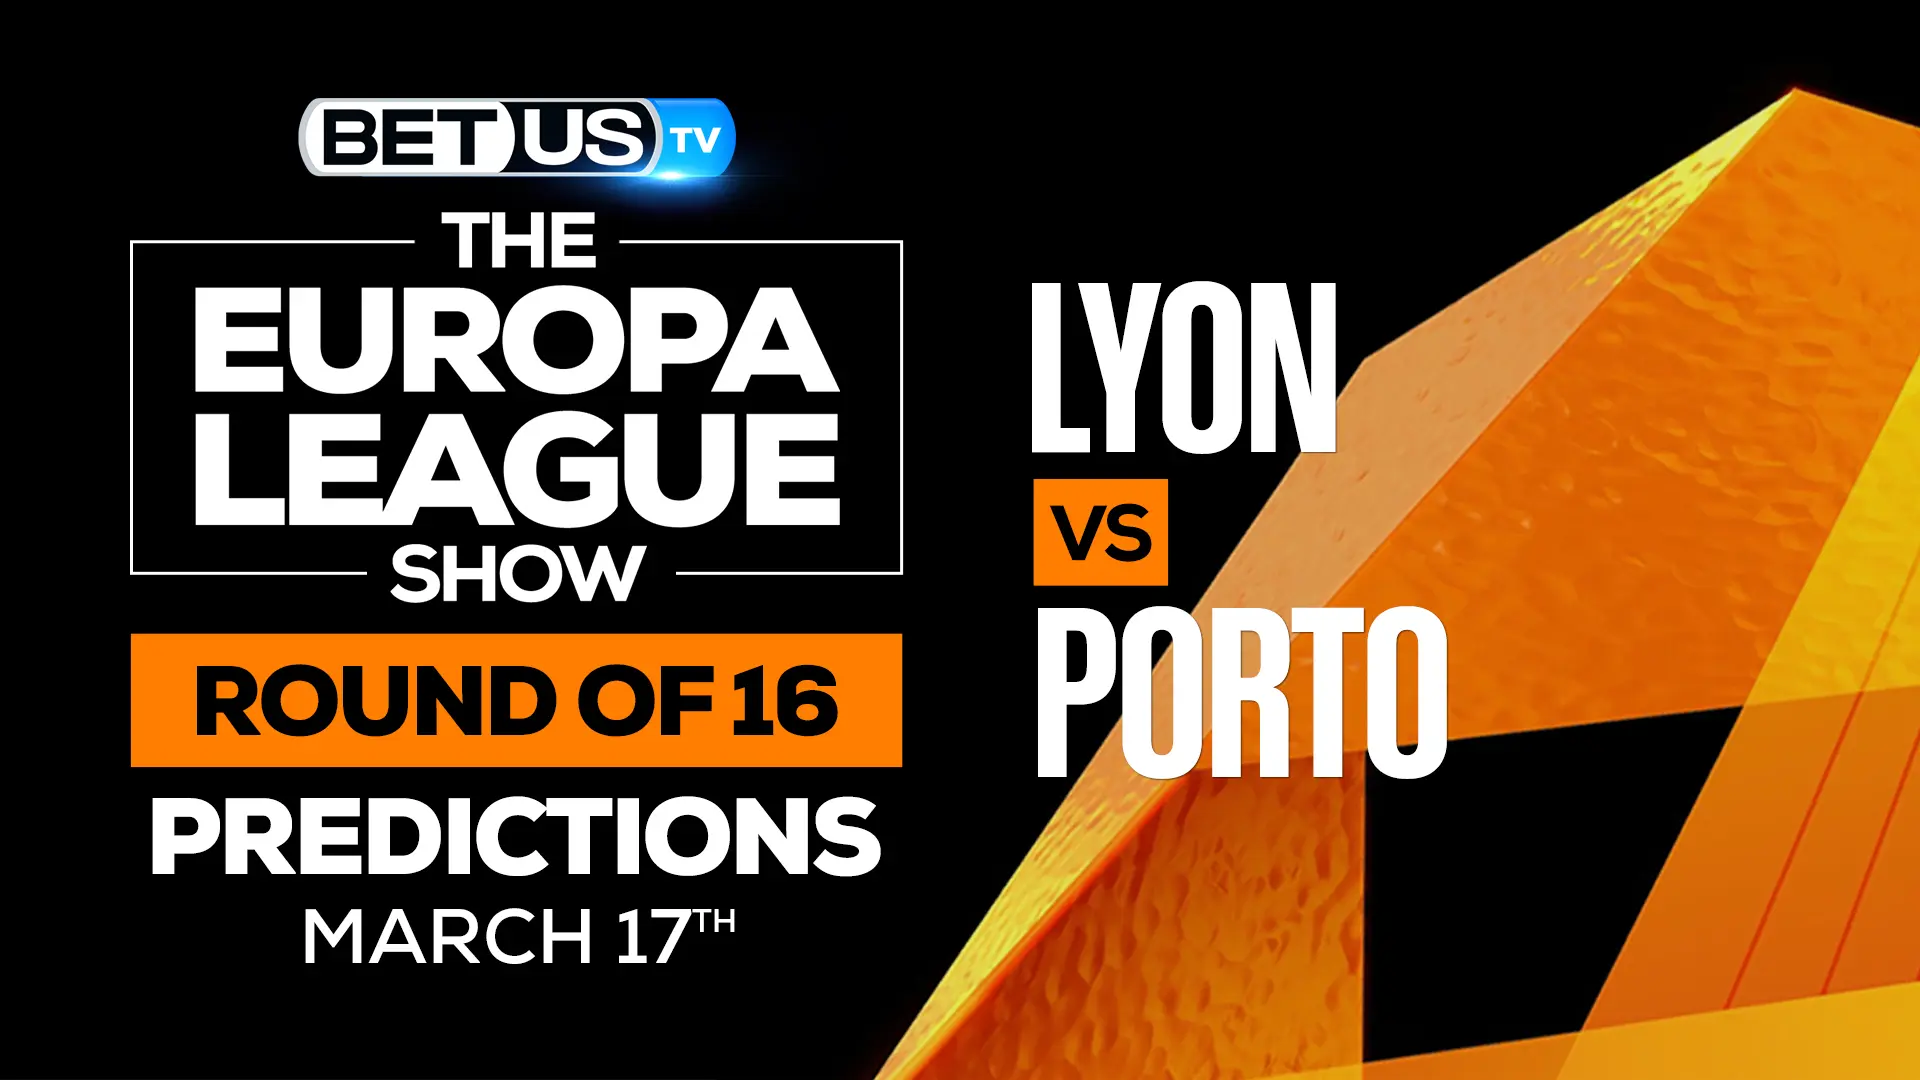 Porto vs lyon